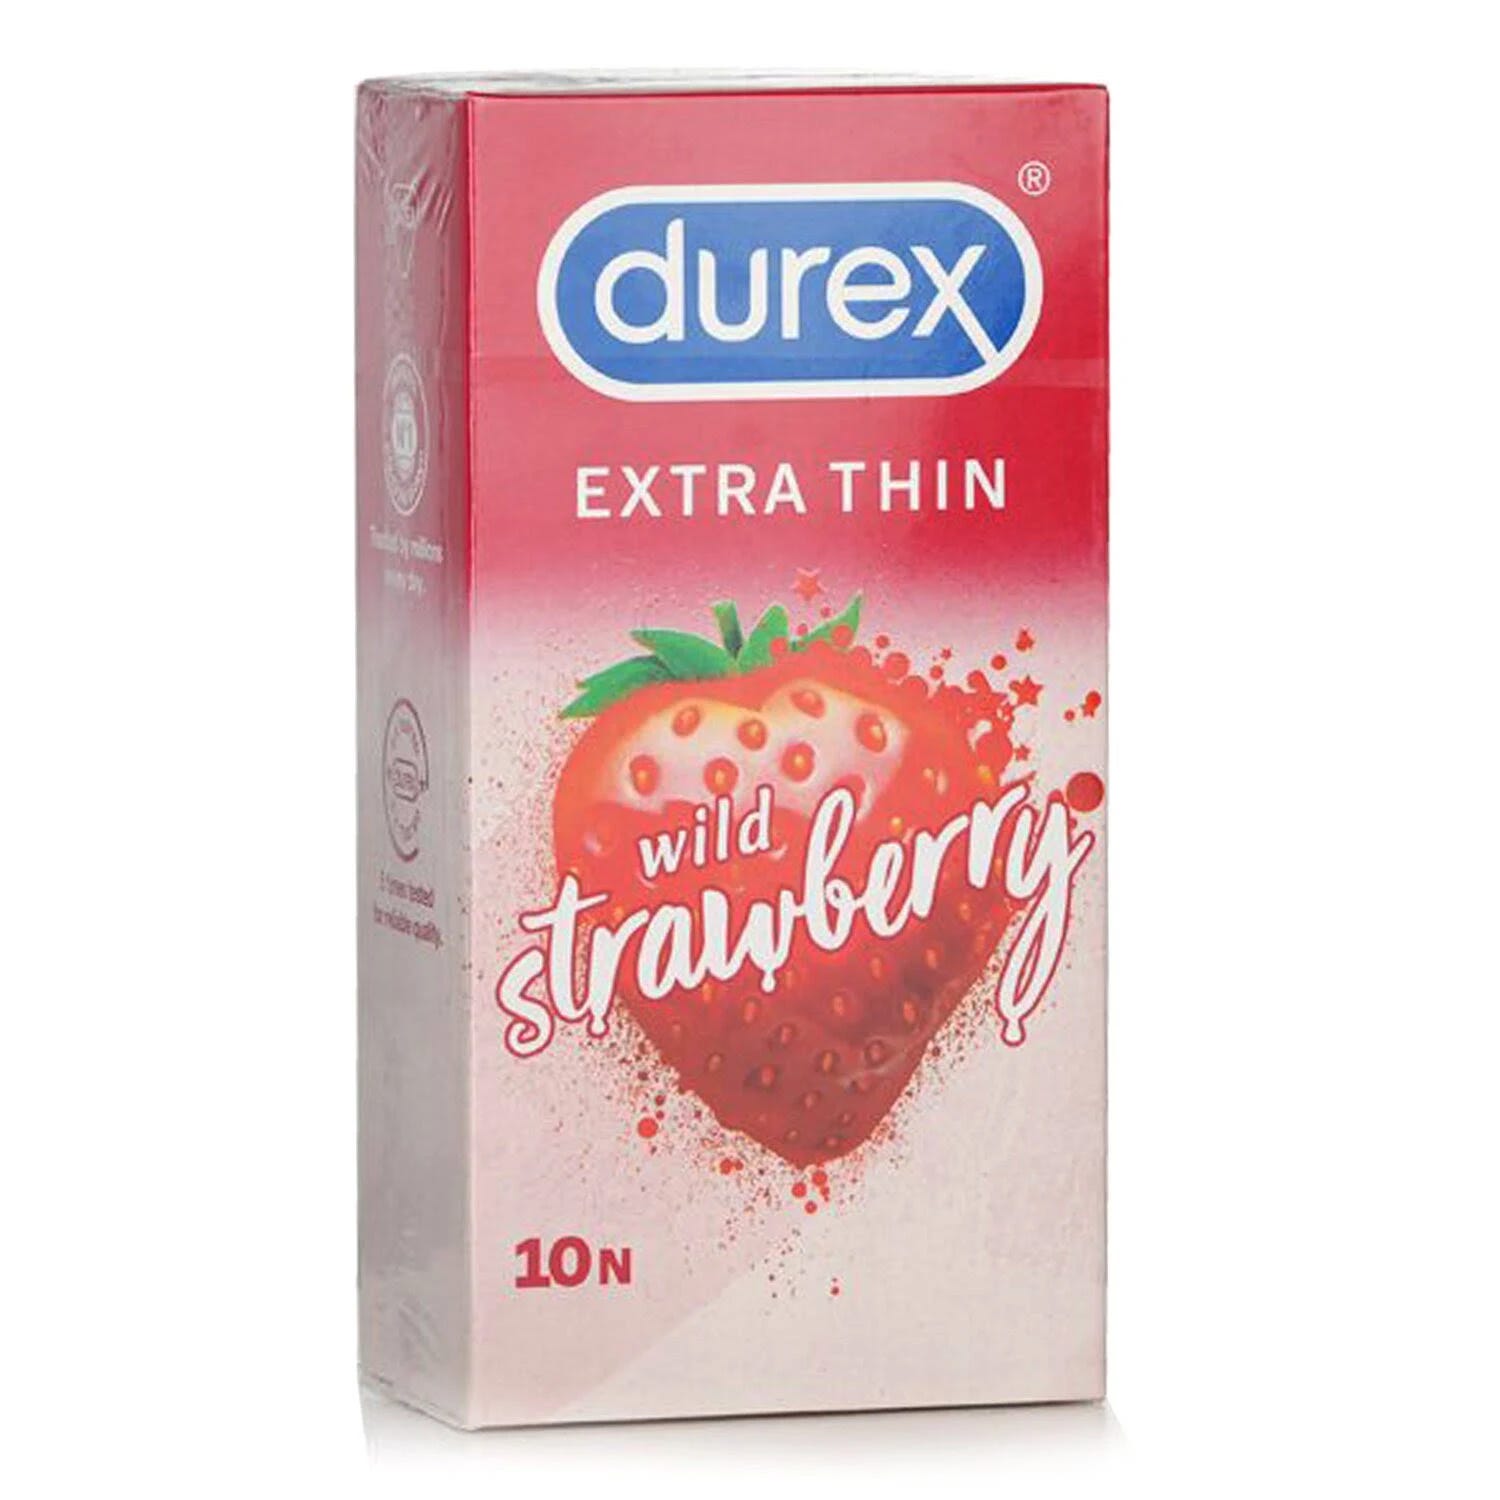 Wild Strawberry Flavored Durex Condoms | Image